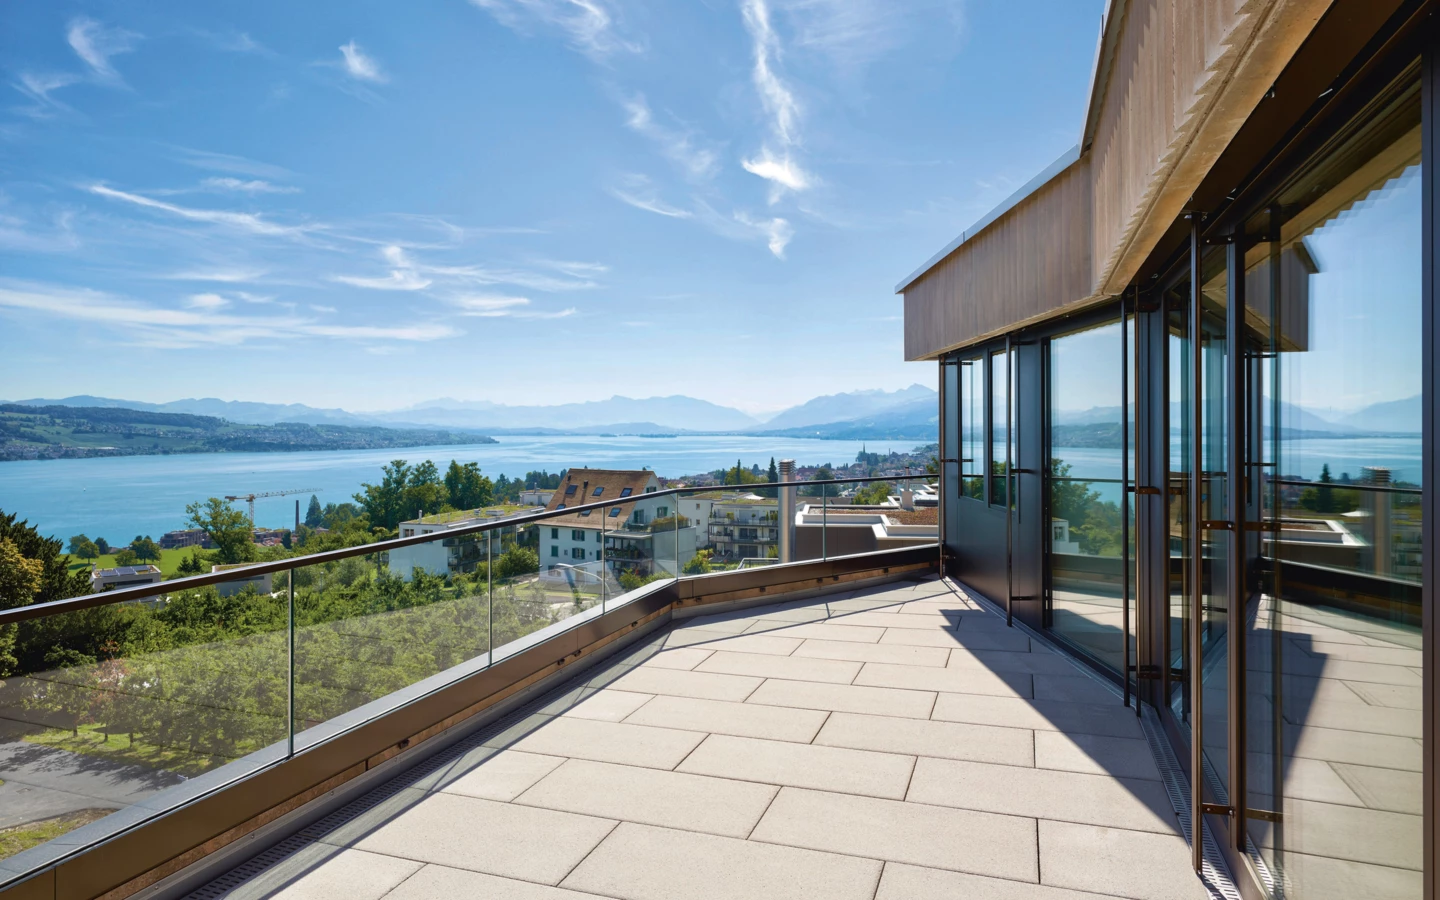 Raum zum Träumen und Entspannen – der Blick auf den Zürichsee lässt den Alltag schnell verstummen.